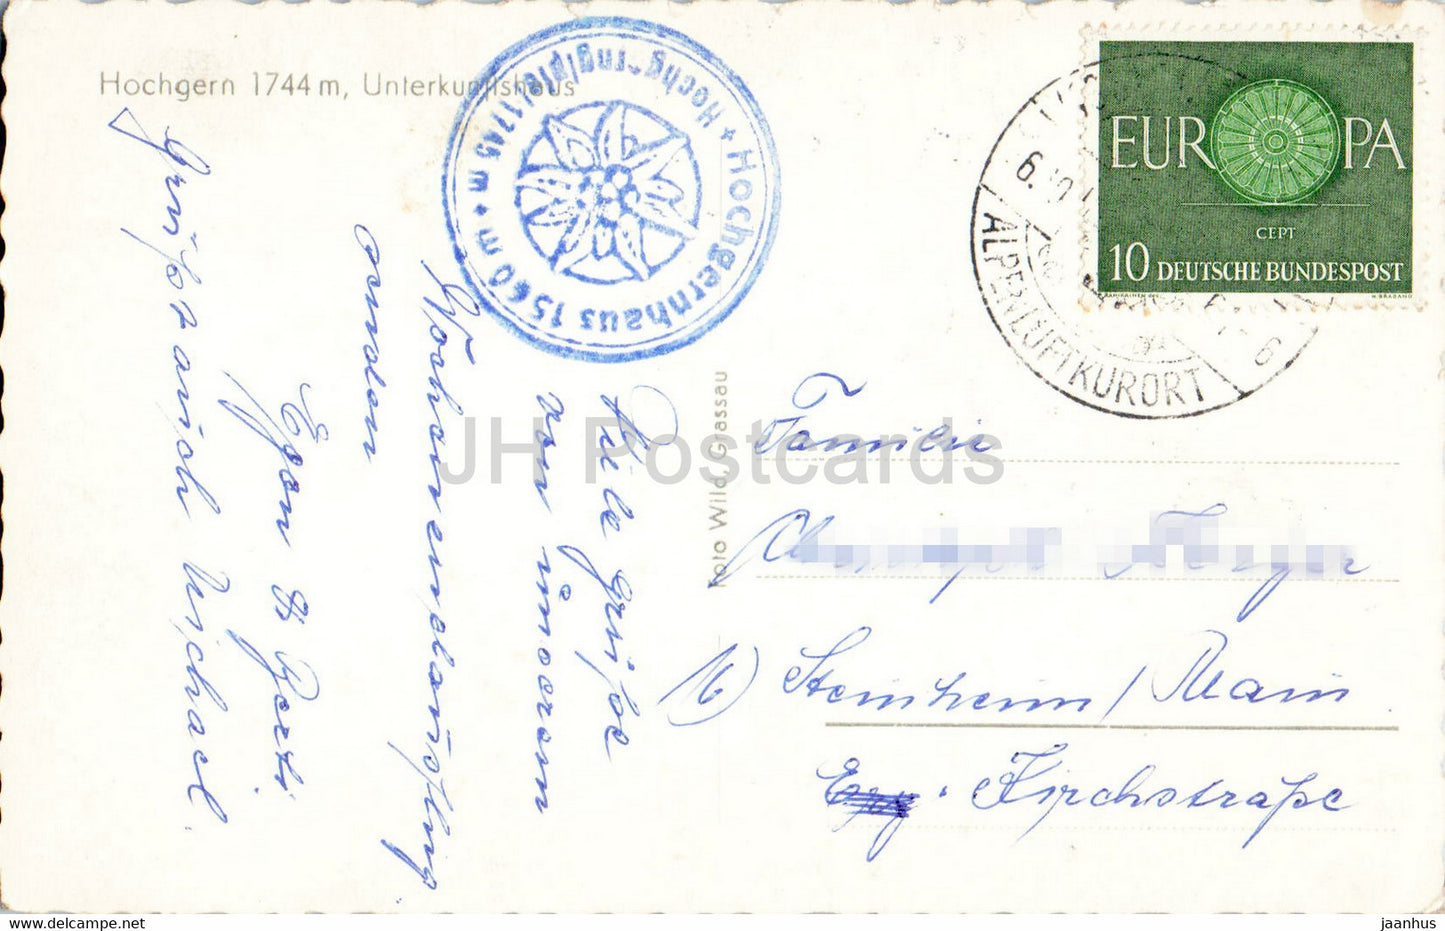 Hochgern 1744 m - Unterkunfthaus - carte postale ancienne - Allemagne - utilisé